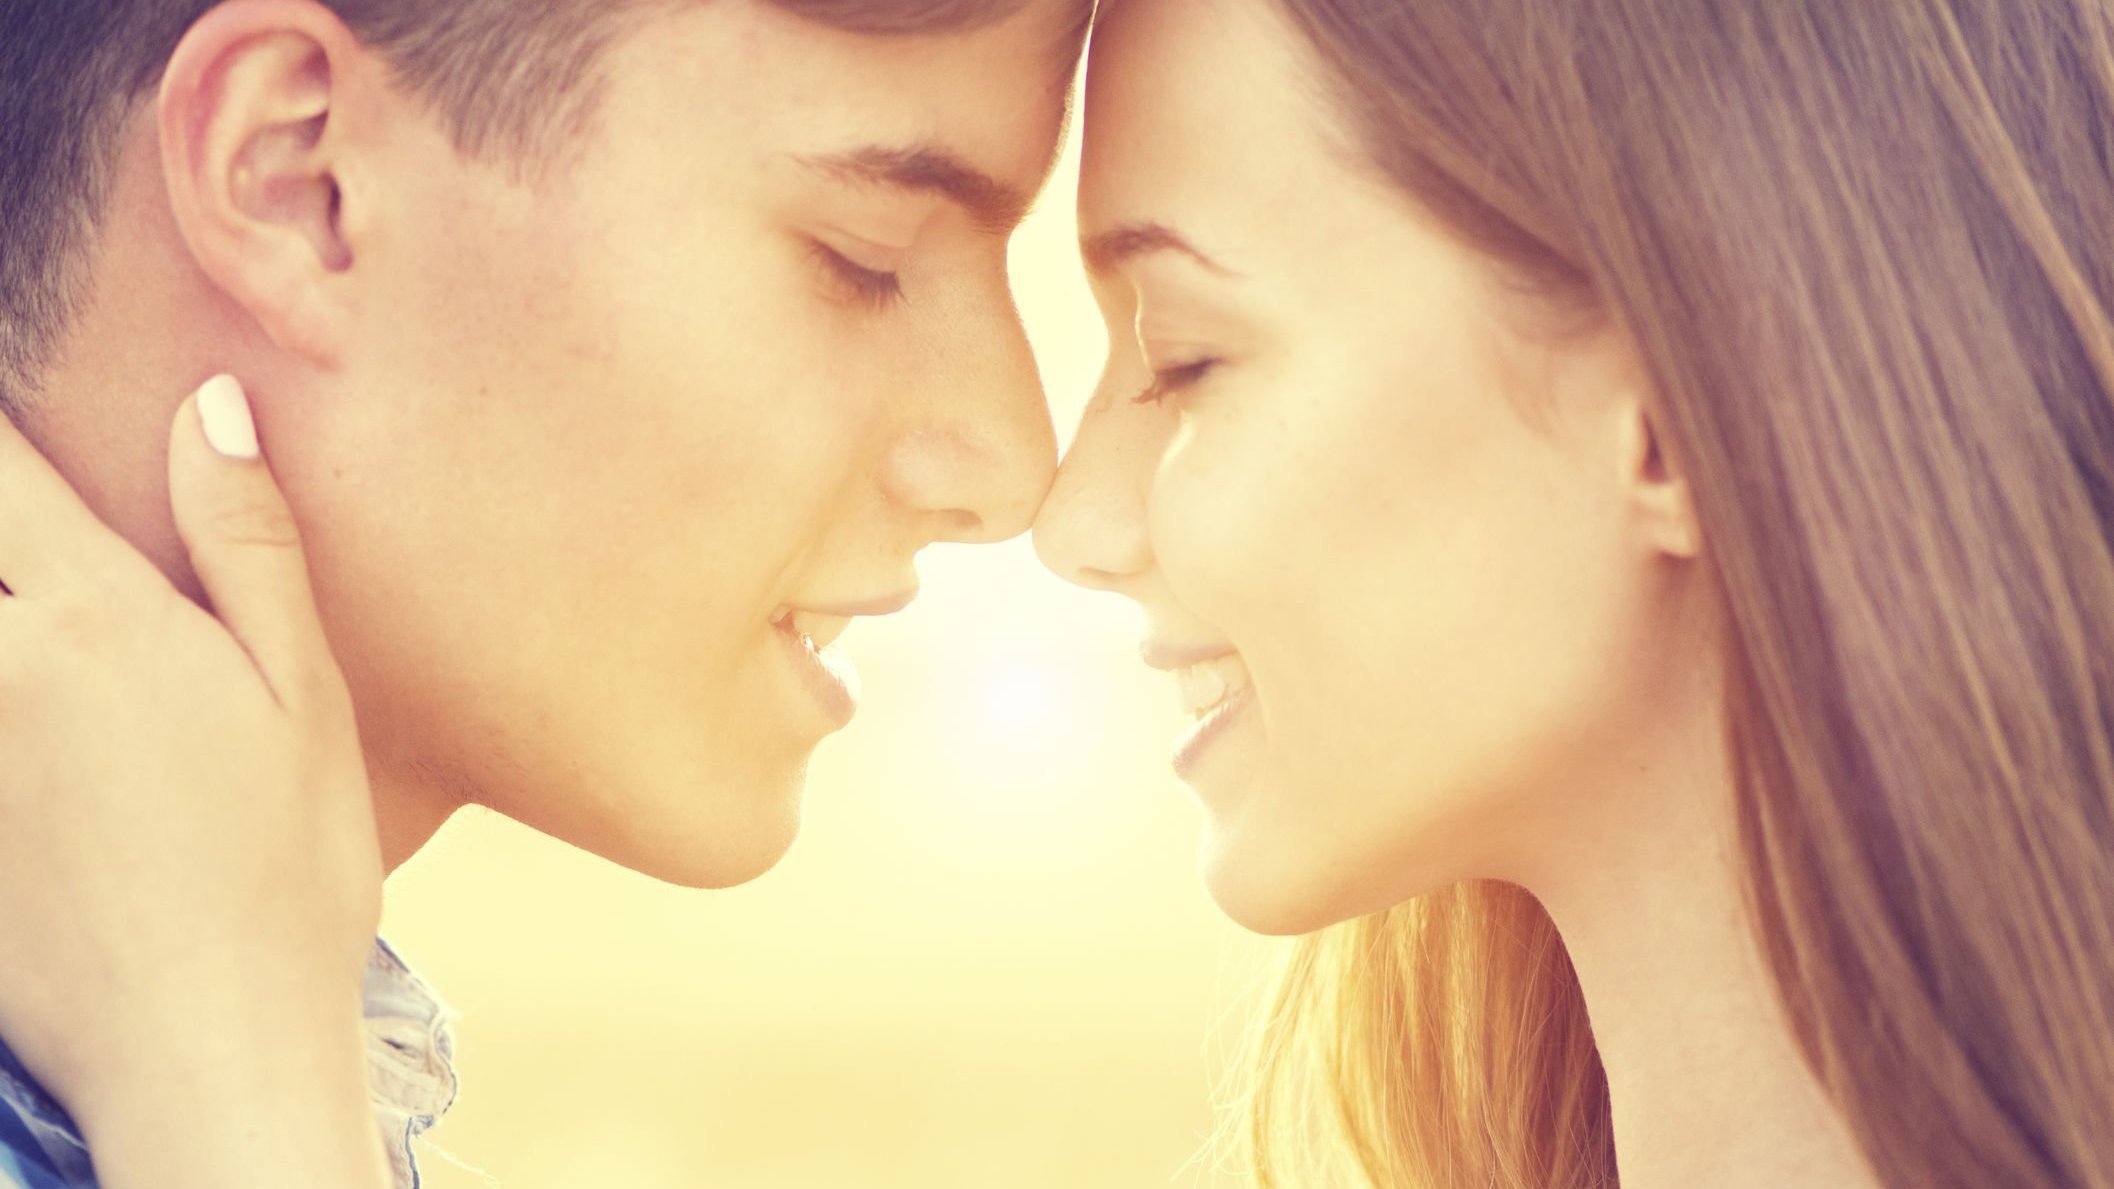 Homem e mulher abraçados sorrindo quase se beijando